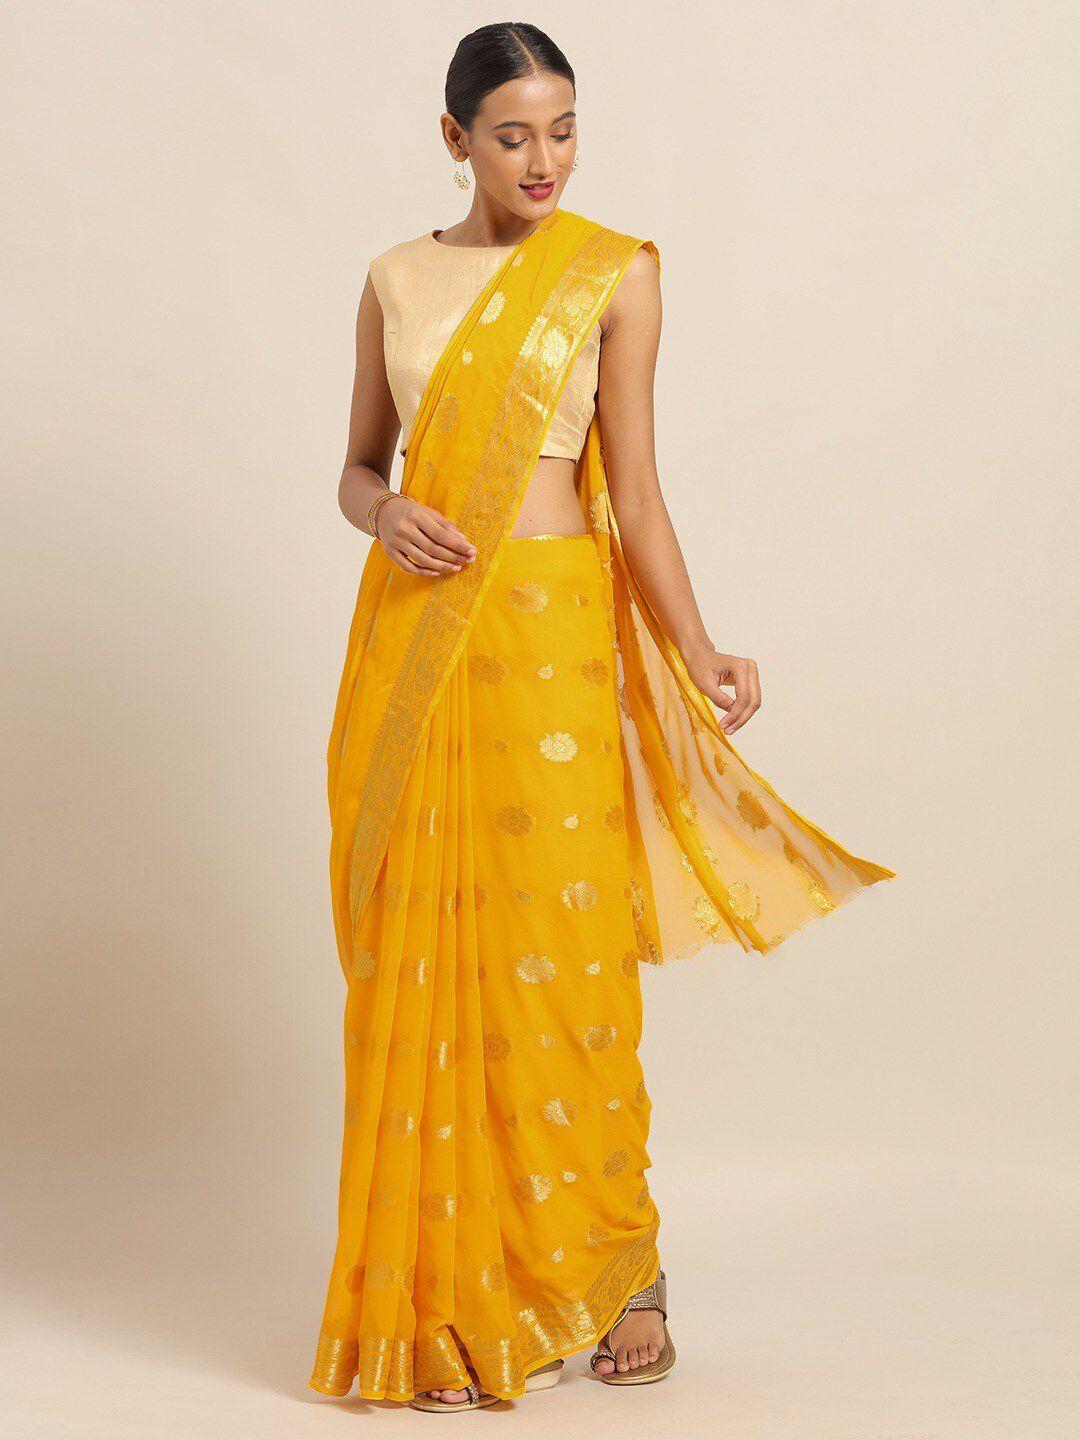 saree mall yellow & gold-toned floral sarees